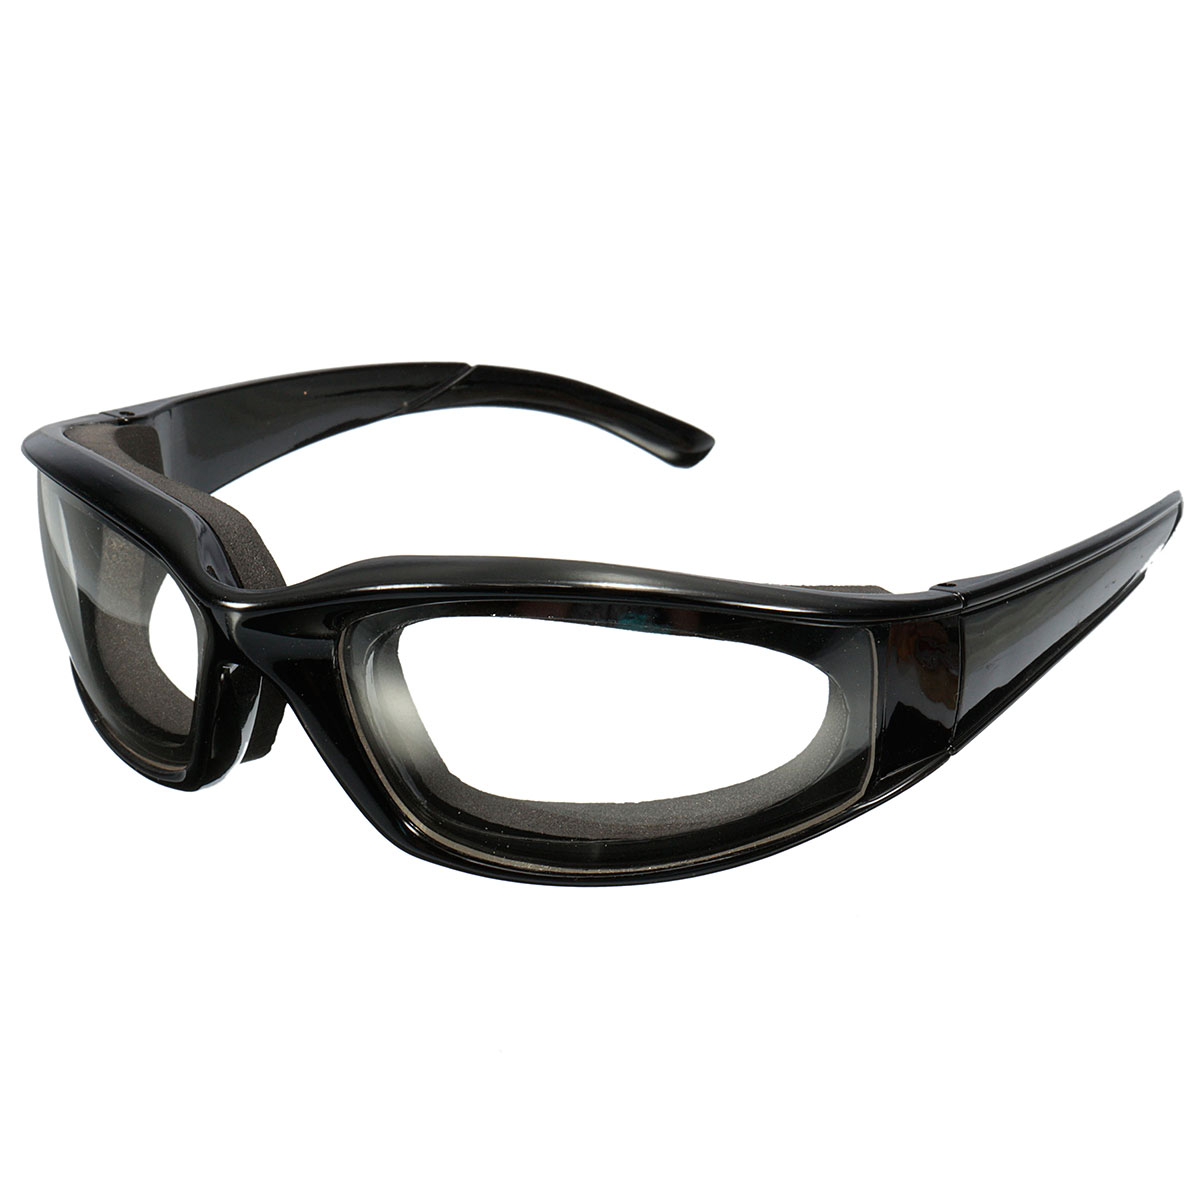 Beskyttelsesbriller briller indbygget i svamp køkken skåret øjenbeskyttelse arbejdsplads sikkerhed vindtæt antisand